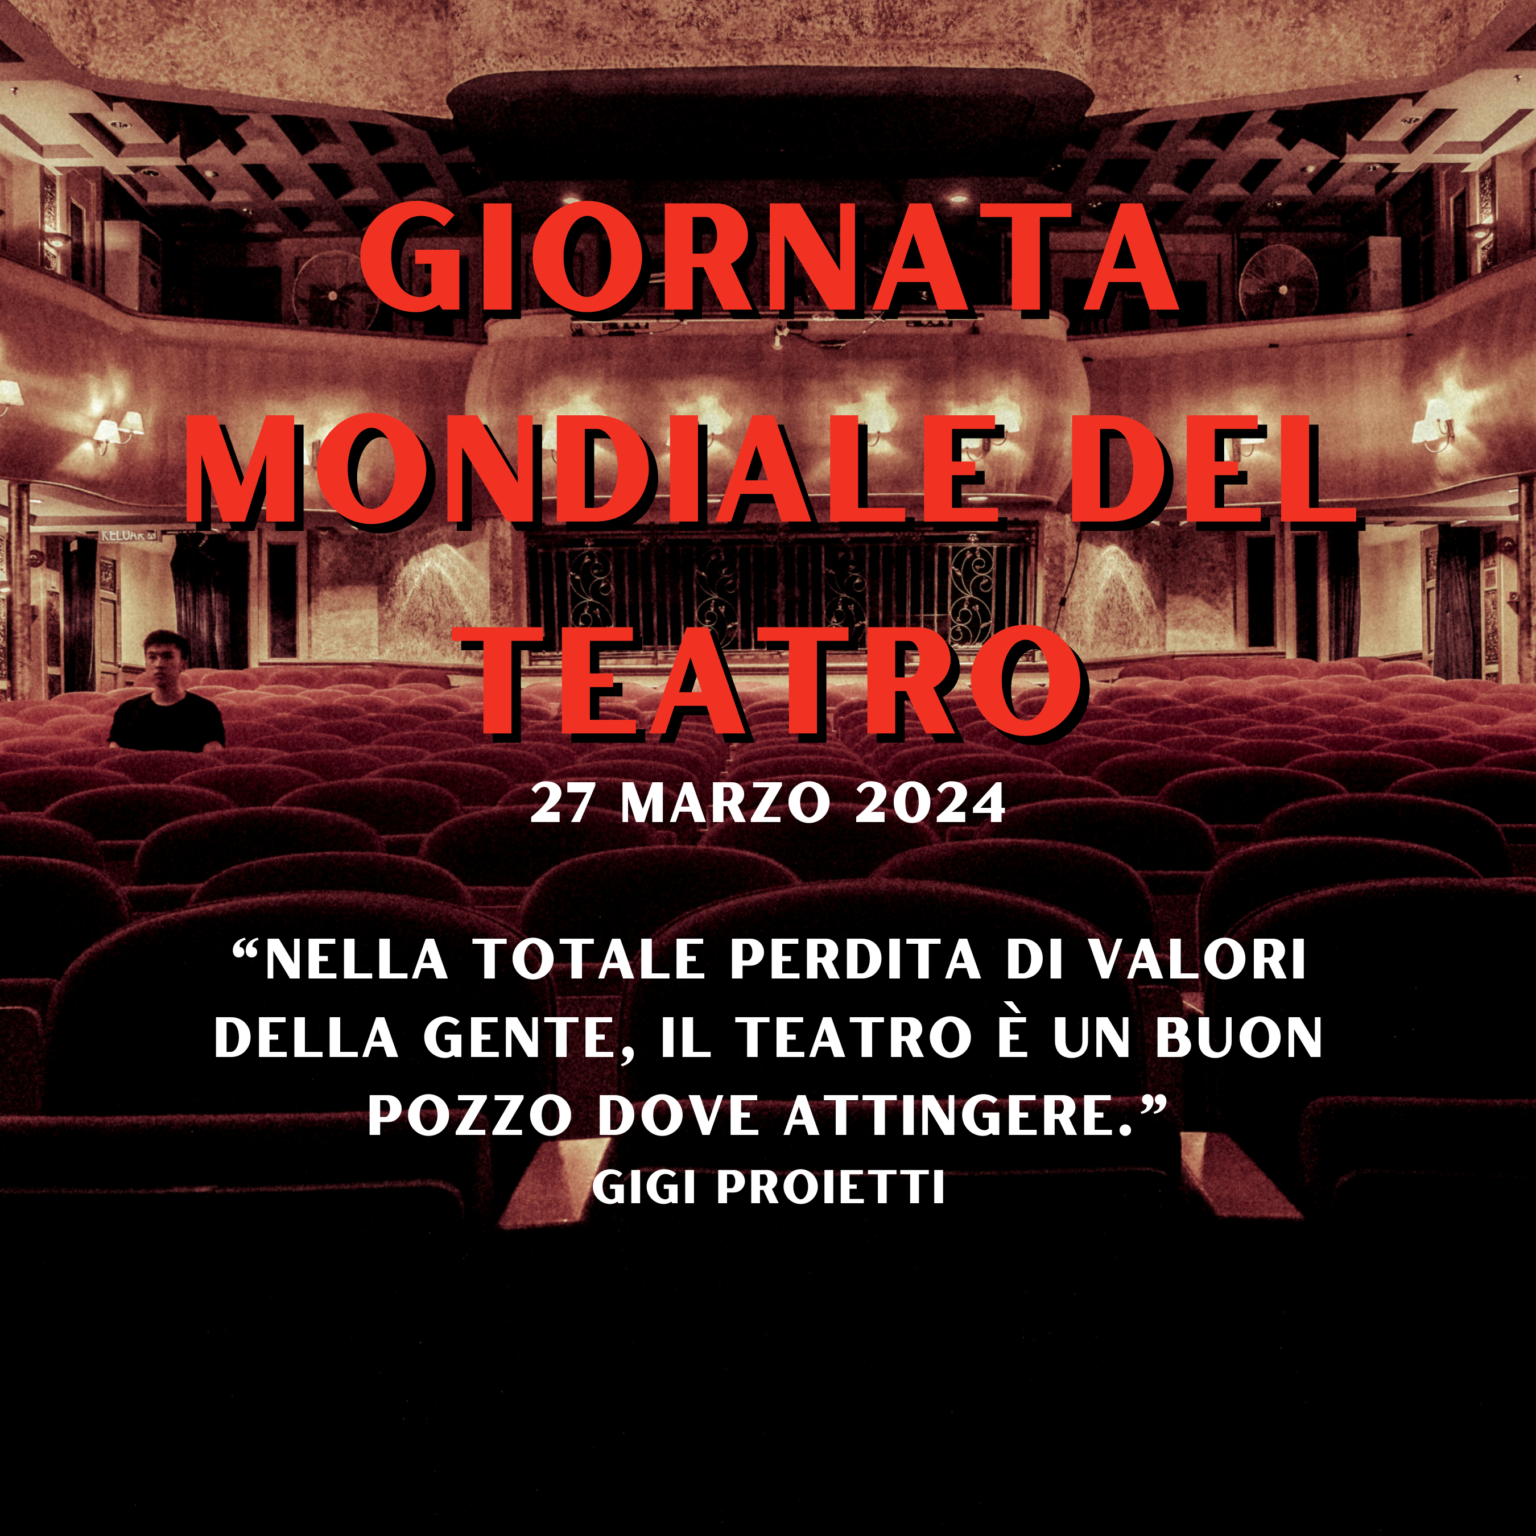 27 MARZO 2024 – Giornata Mondiale del Teatro